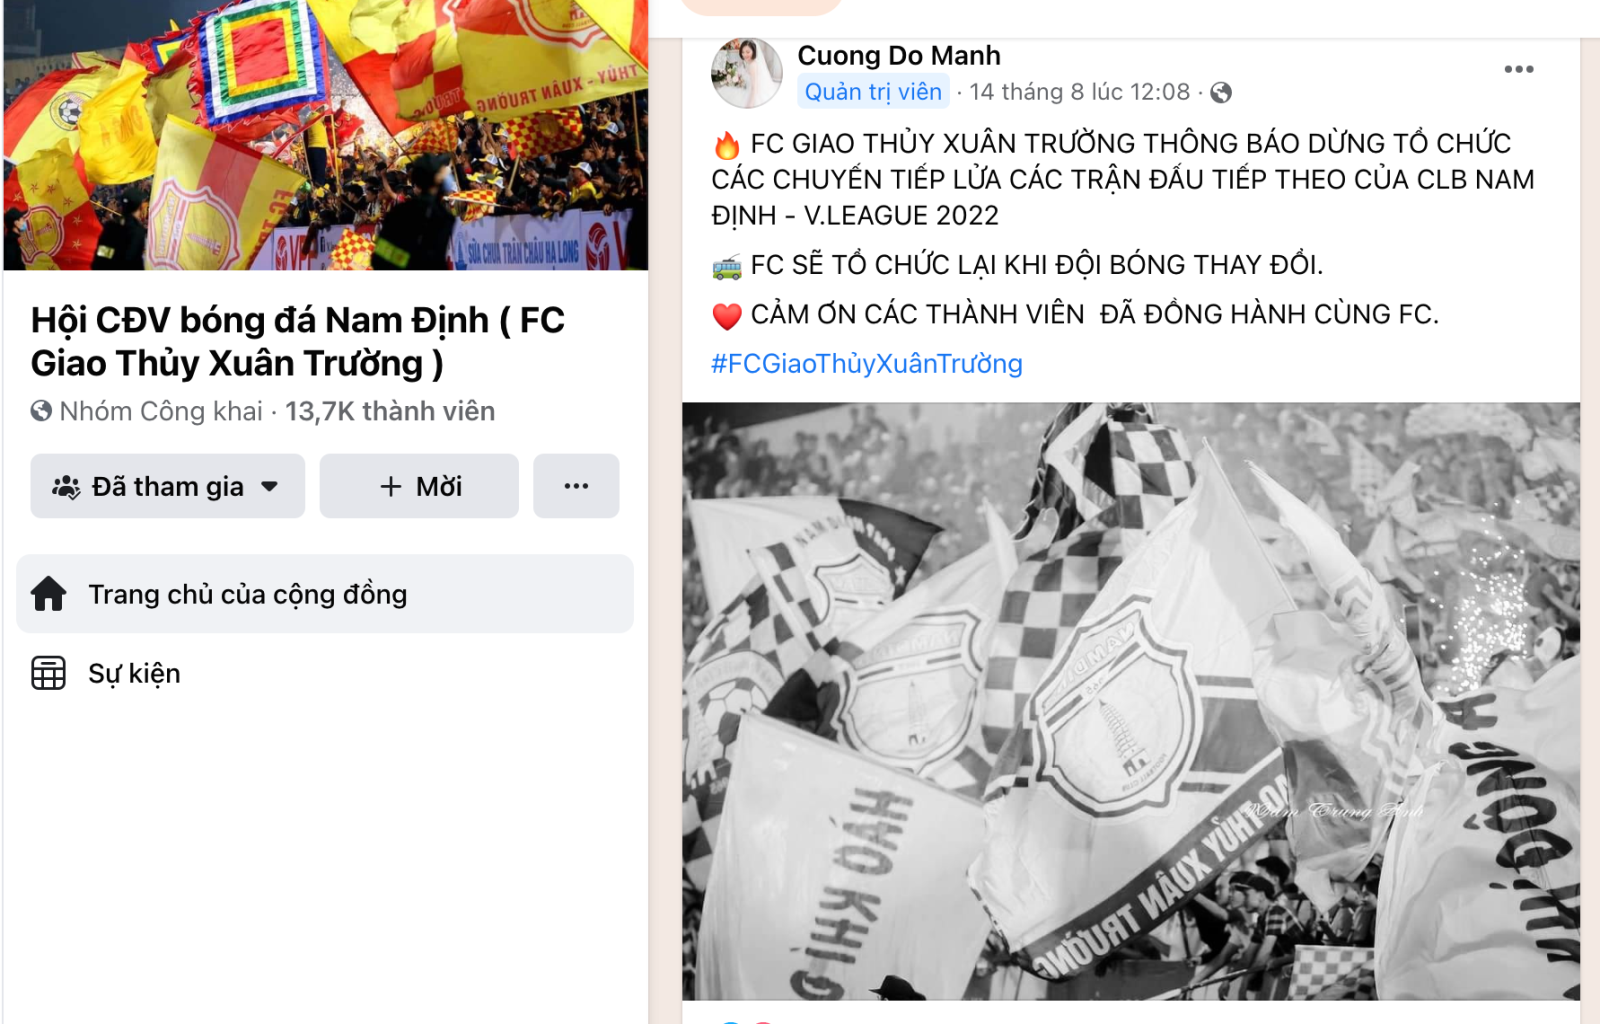 CĐV Nam Định ngừng tiếp lửa, yêu cầu CLB Nam Định thay đổi - ảnh 1